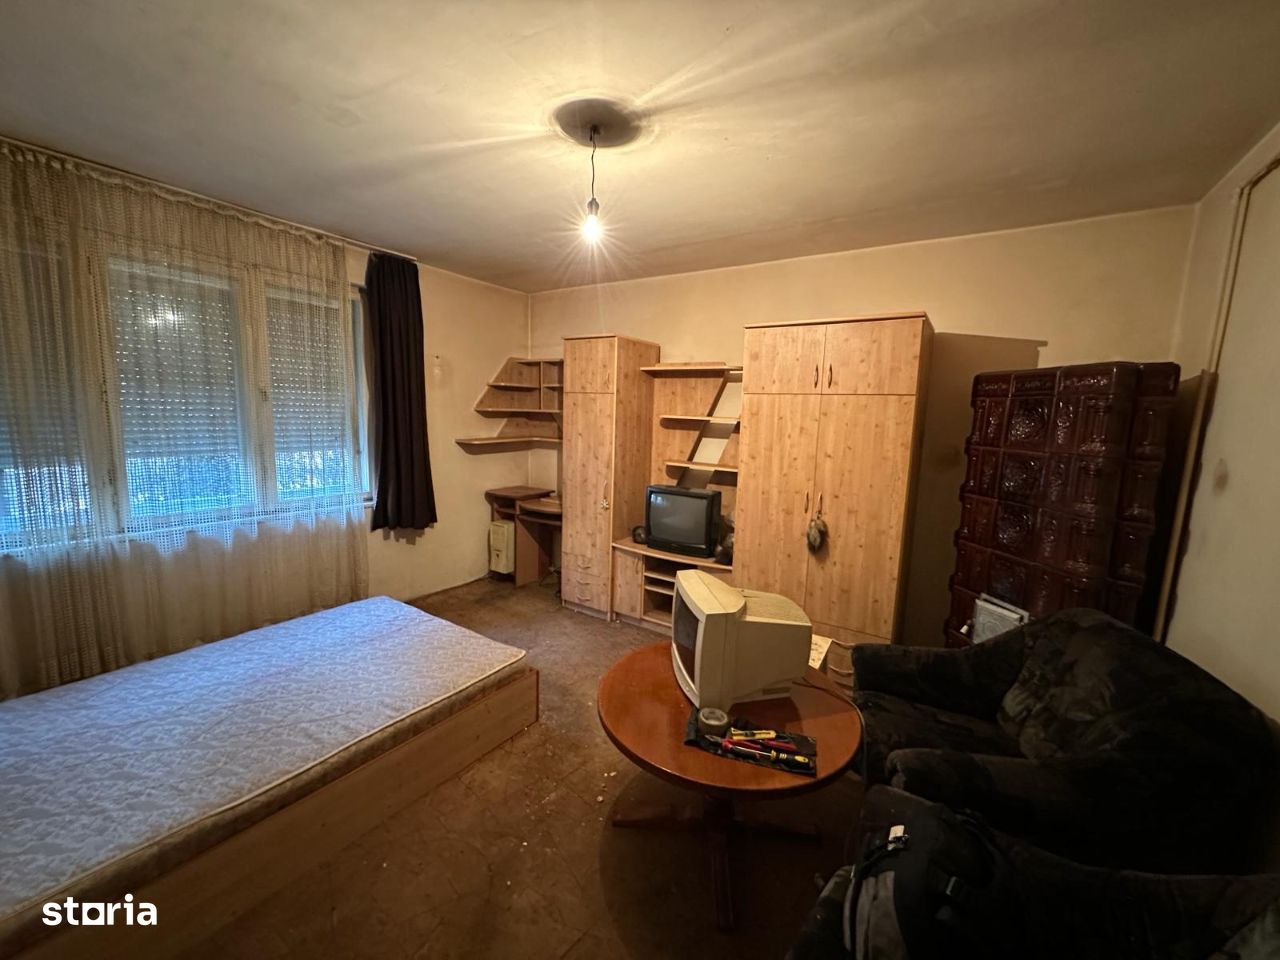 C/1455 De vânzare apartament cu 2 camere în Tg Mureș - Semicentral